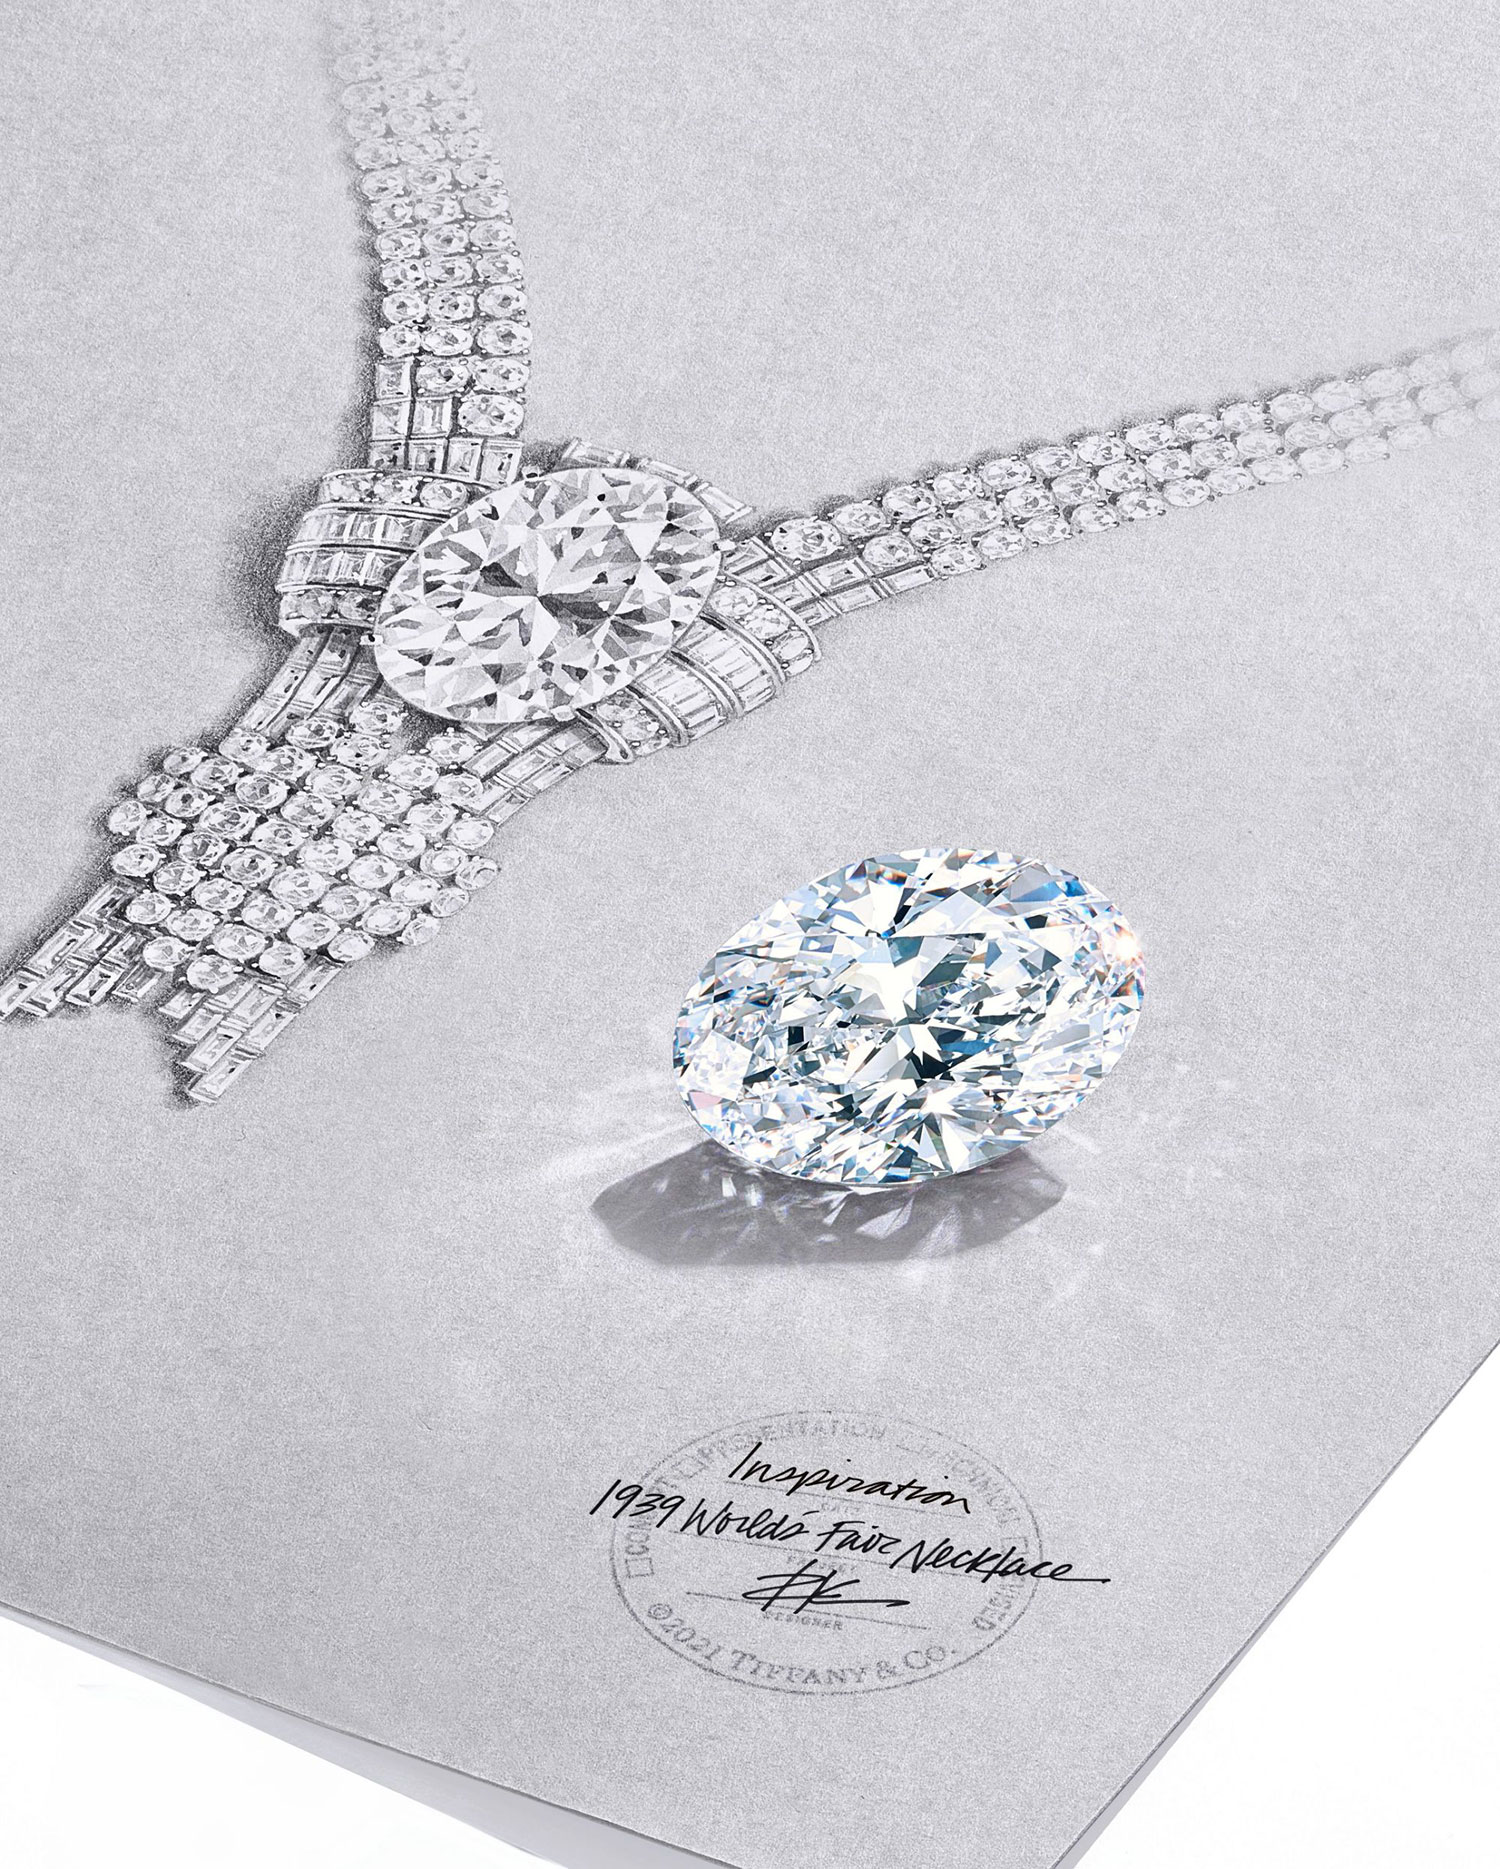 Viên kim cương 80 carat của Tiffany & Co